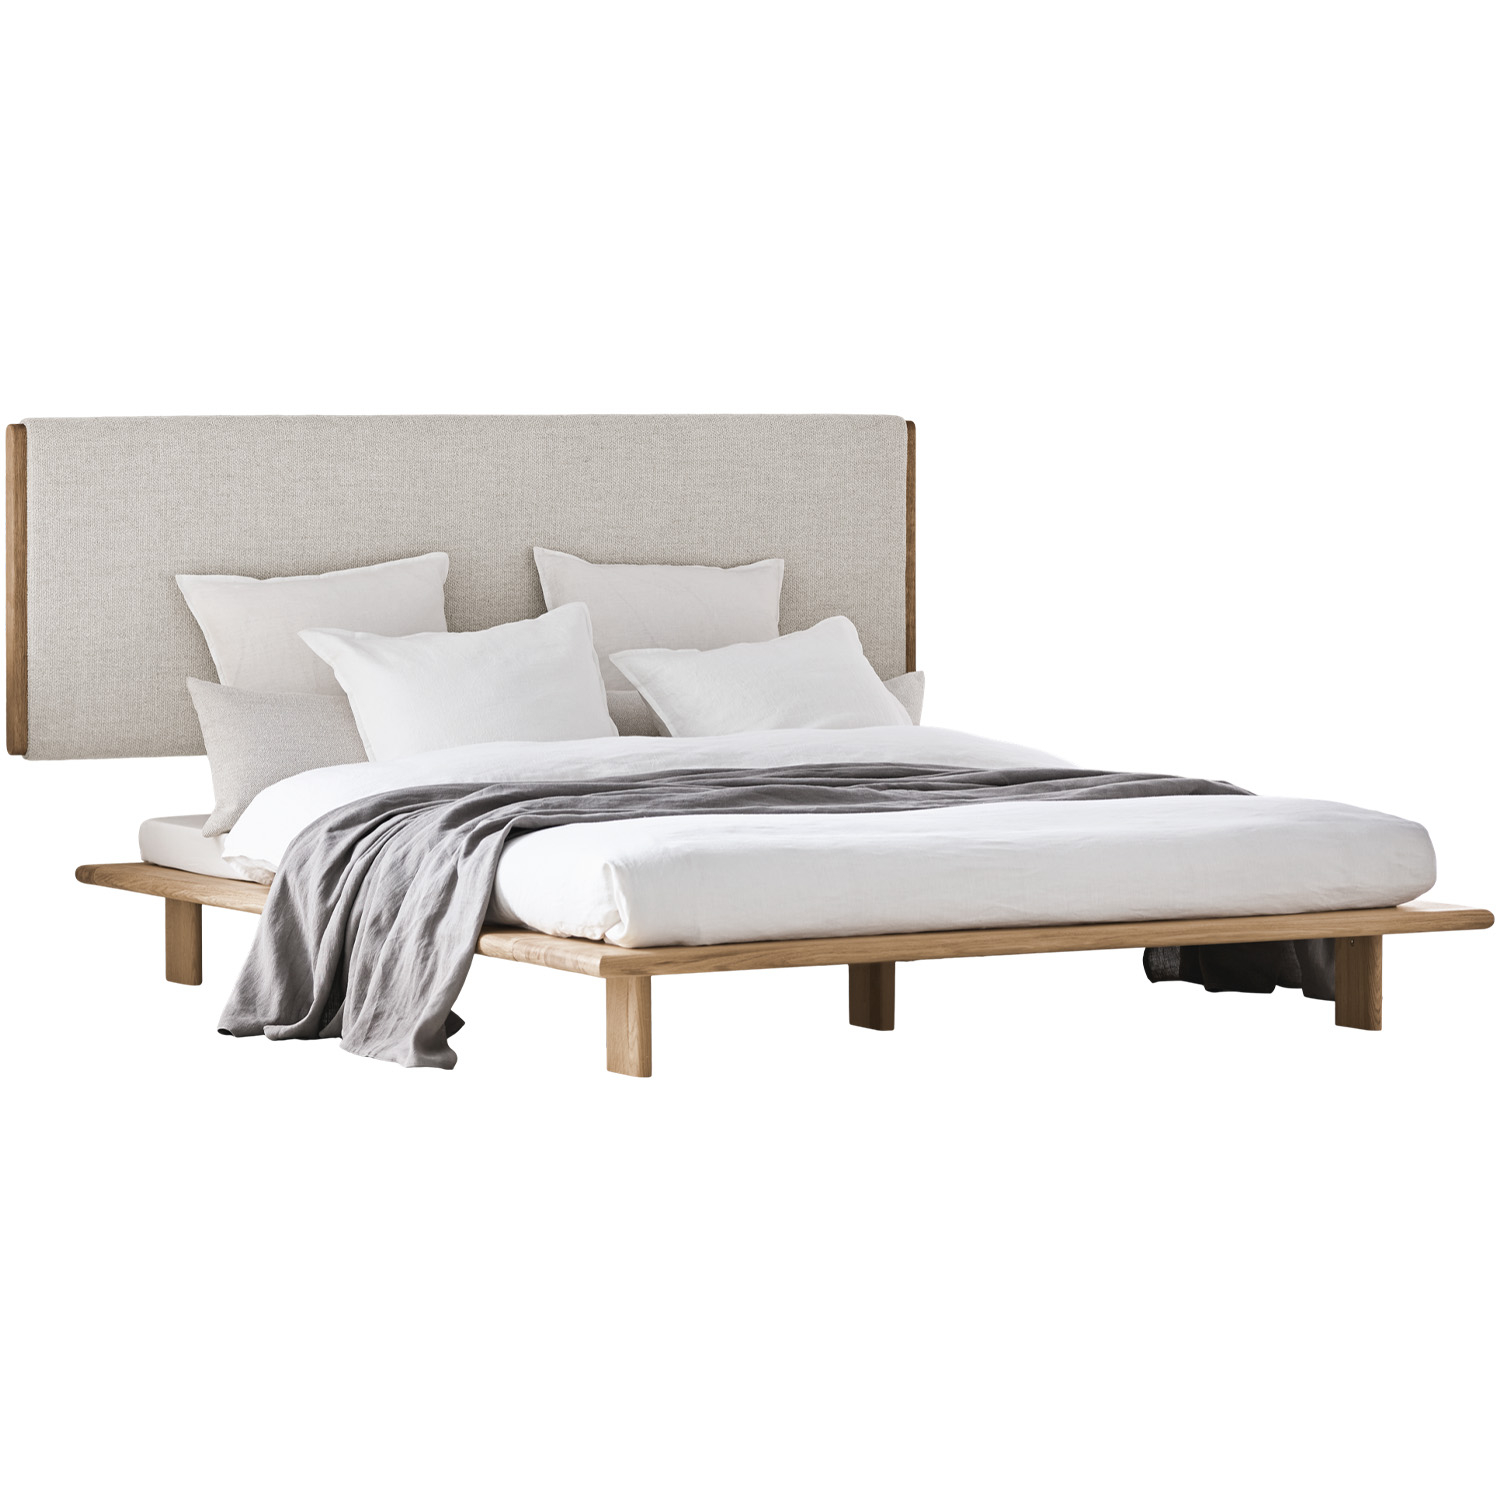 Bolia designové postele Haven Bed (pro matraci 160 x 200 cm)